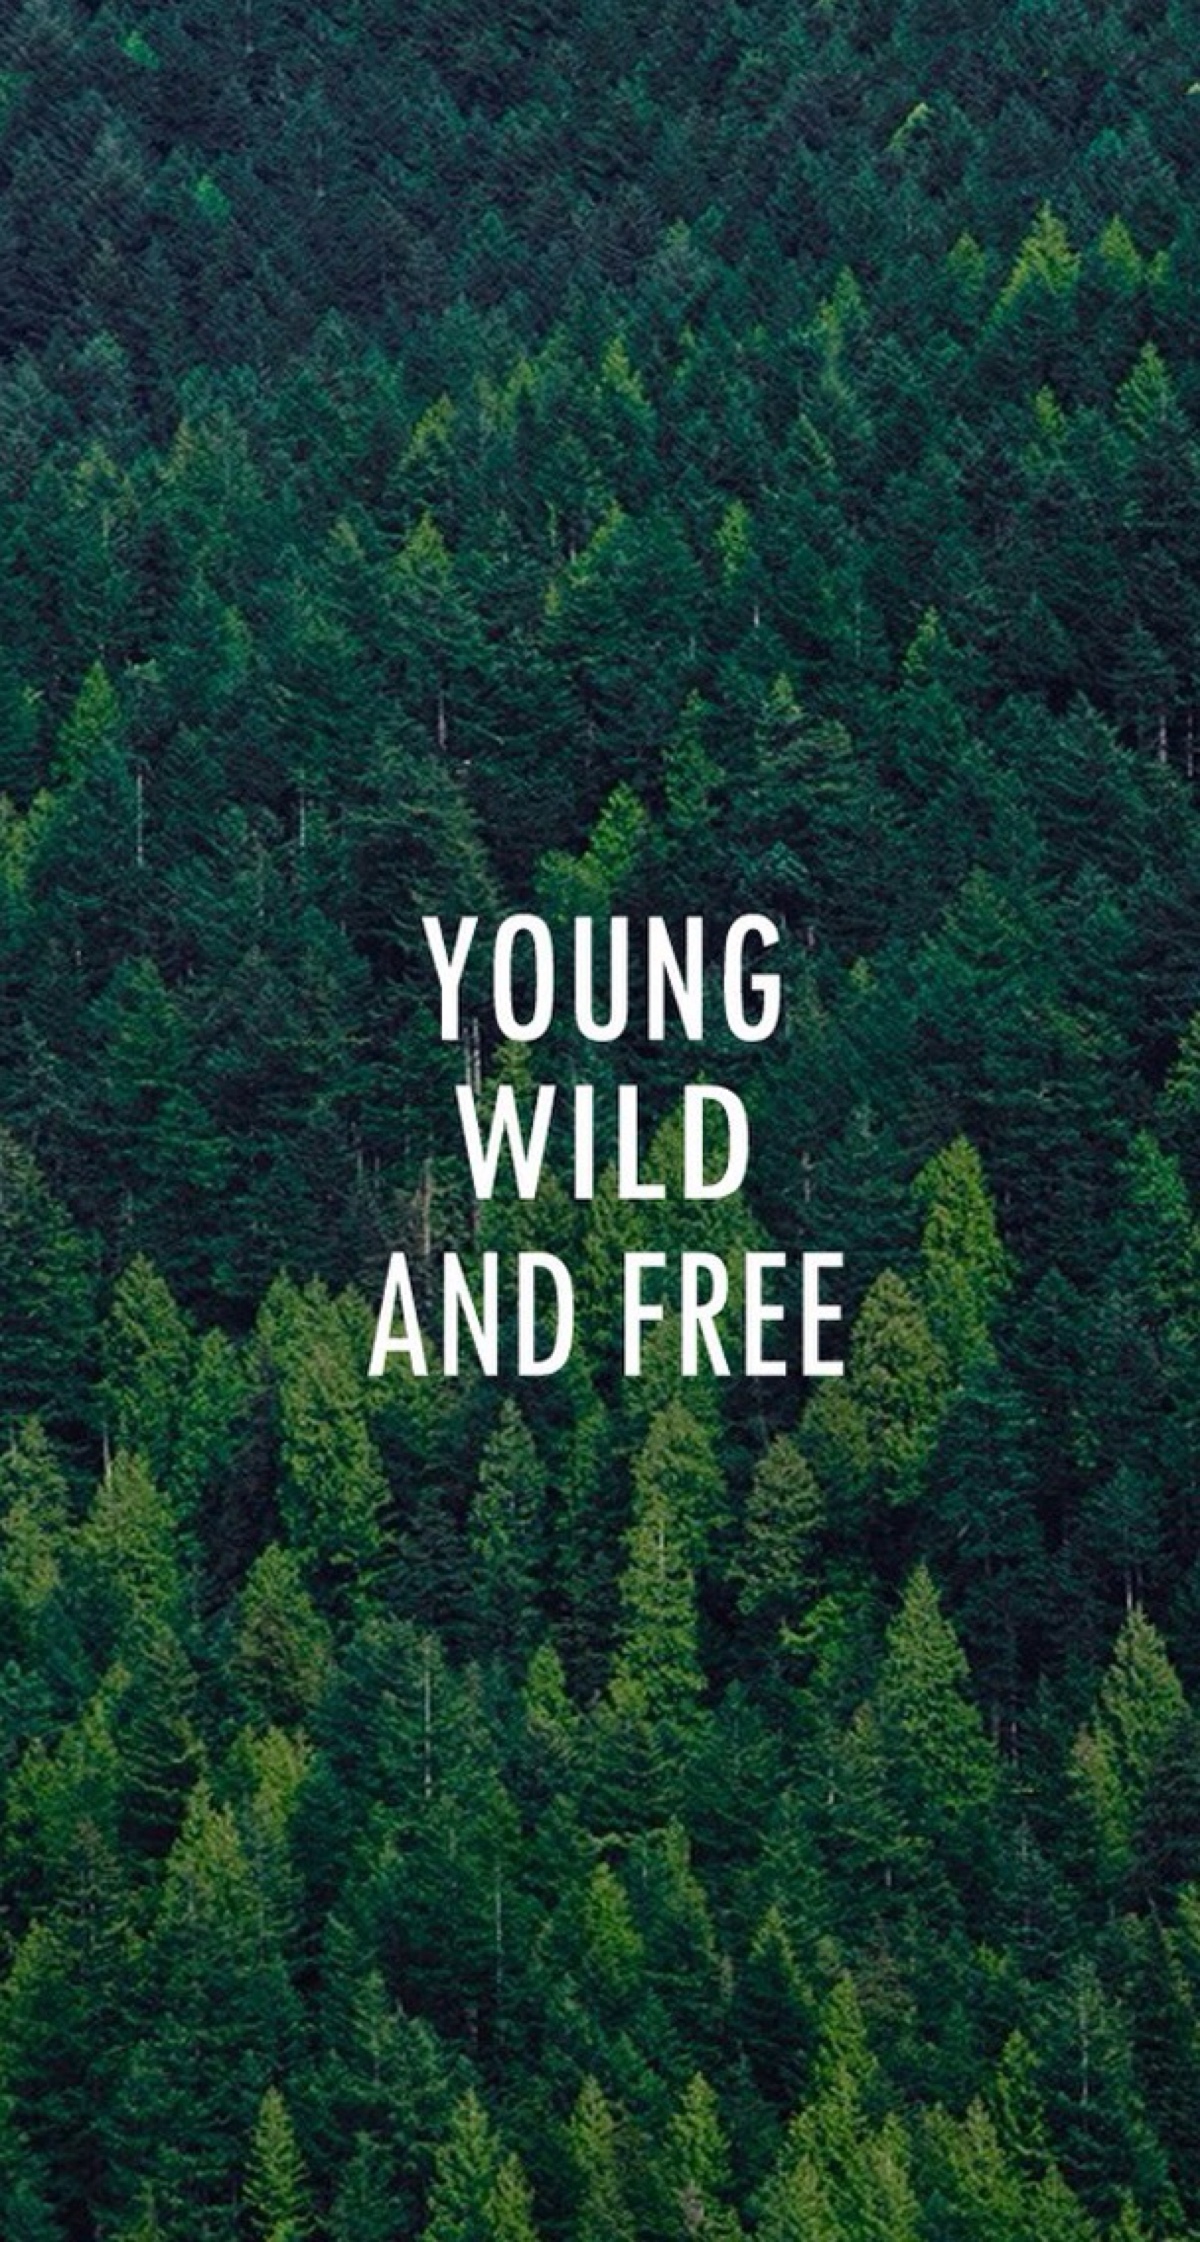 年轻,野性,自由.绿色 树林 欧美 英文 手机壁纸 简洁 立於风中的elsa